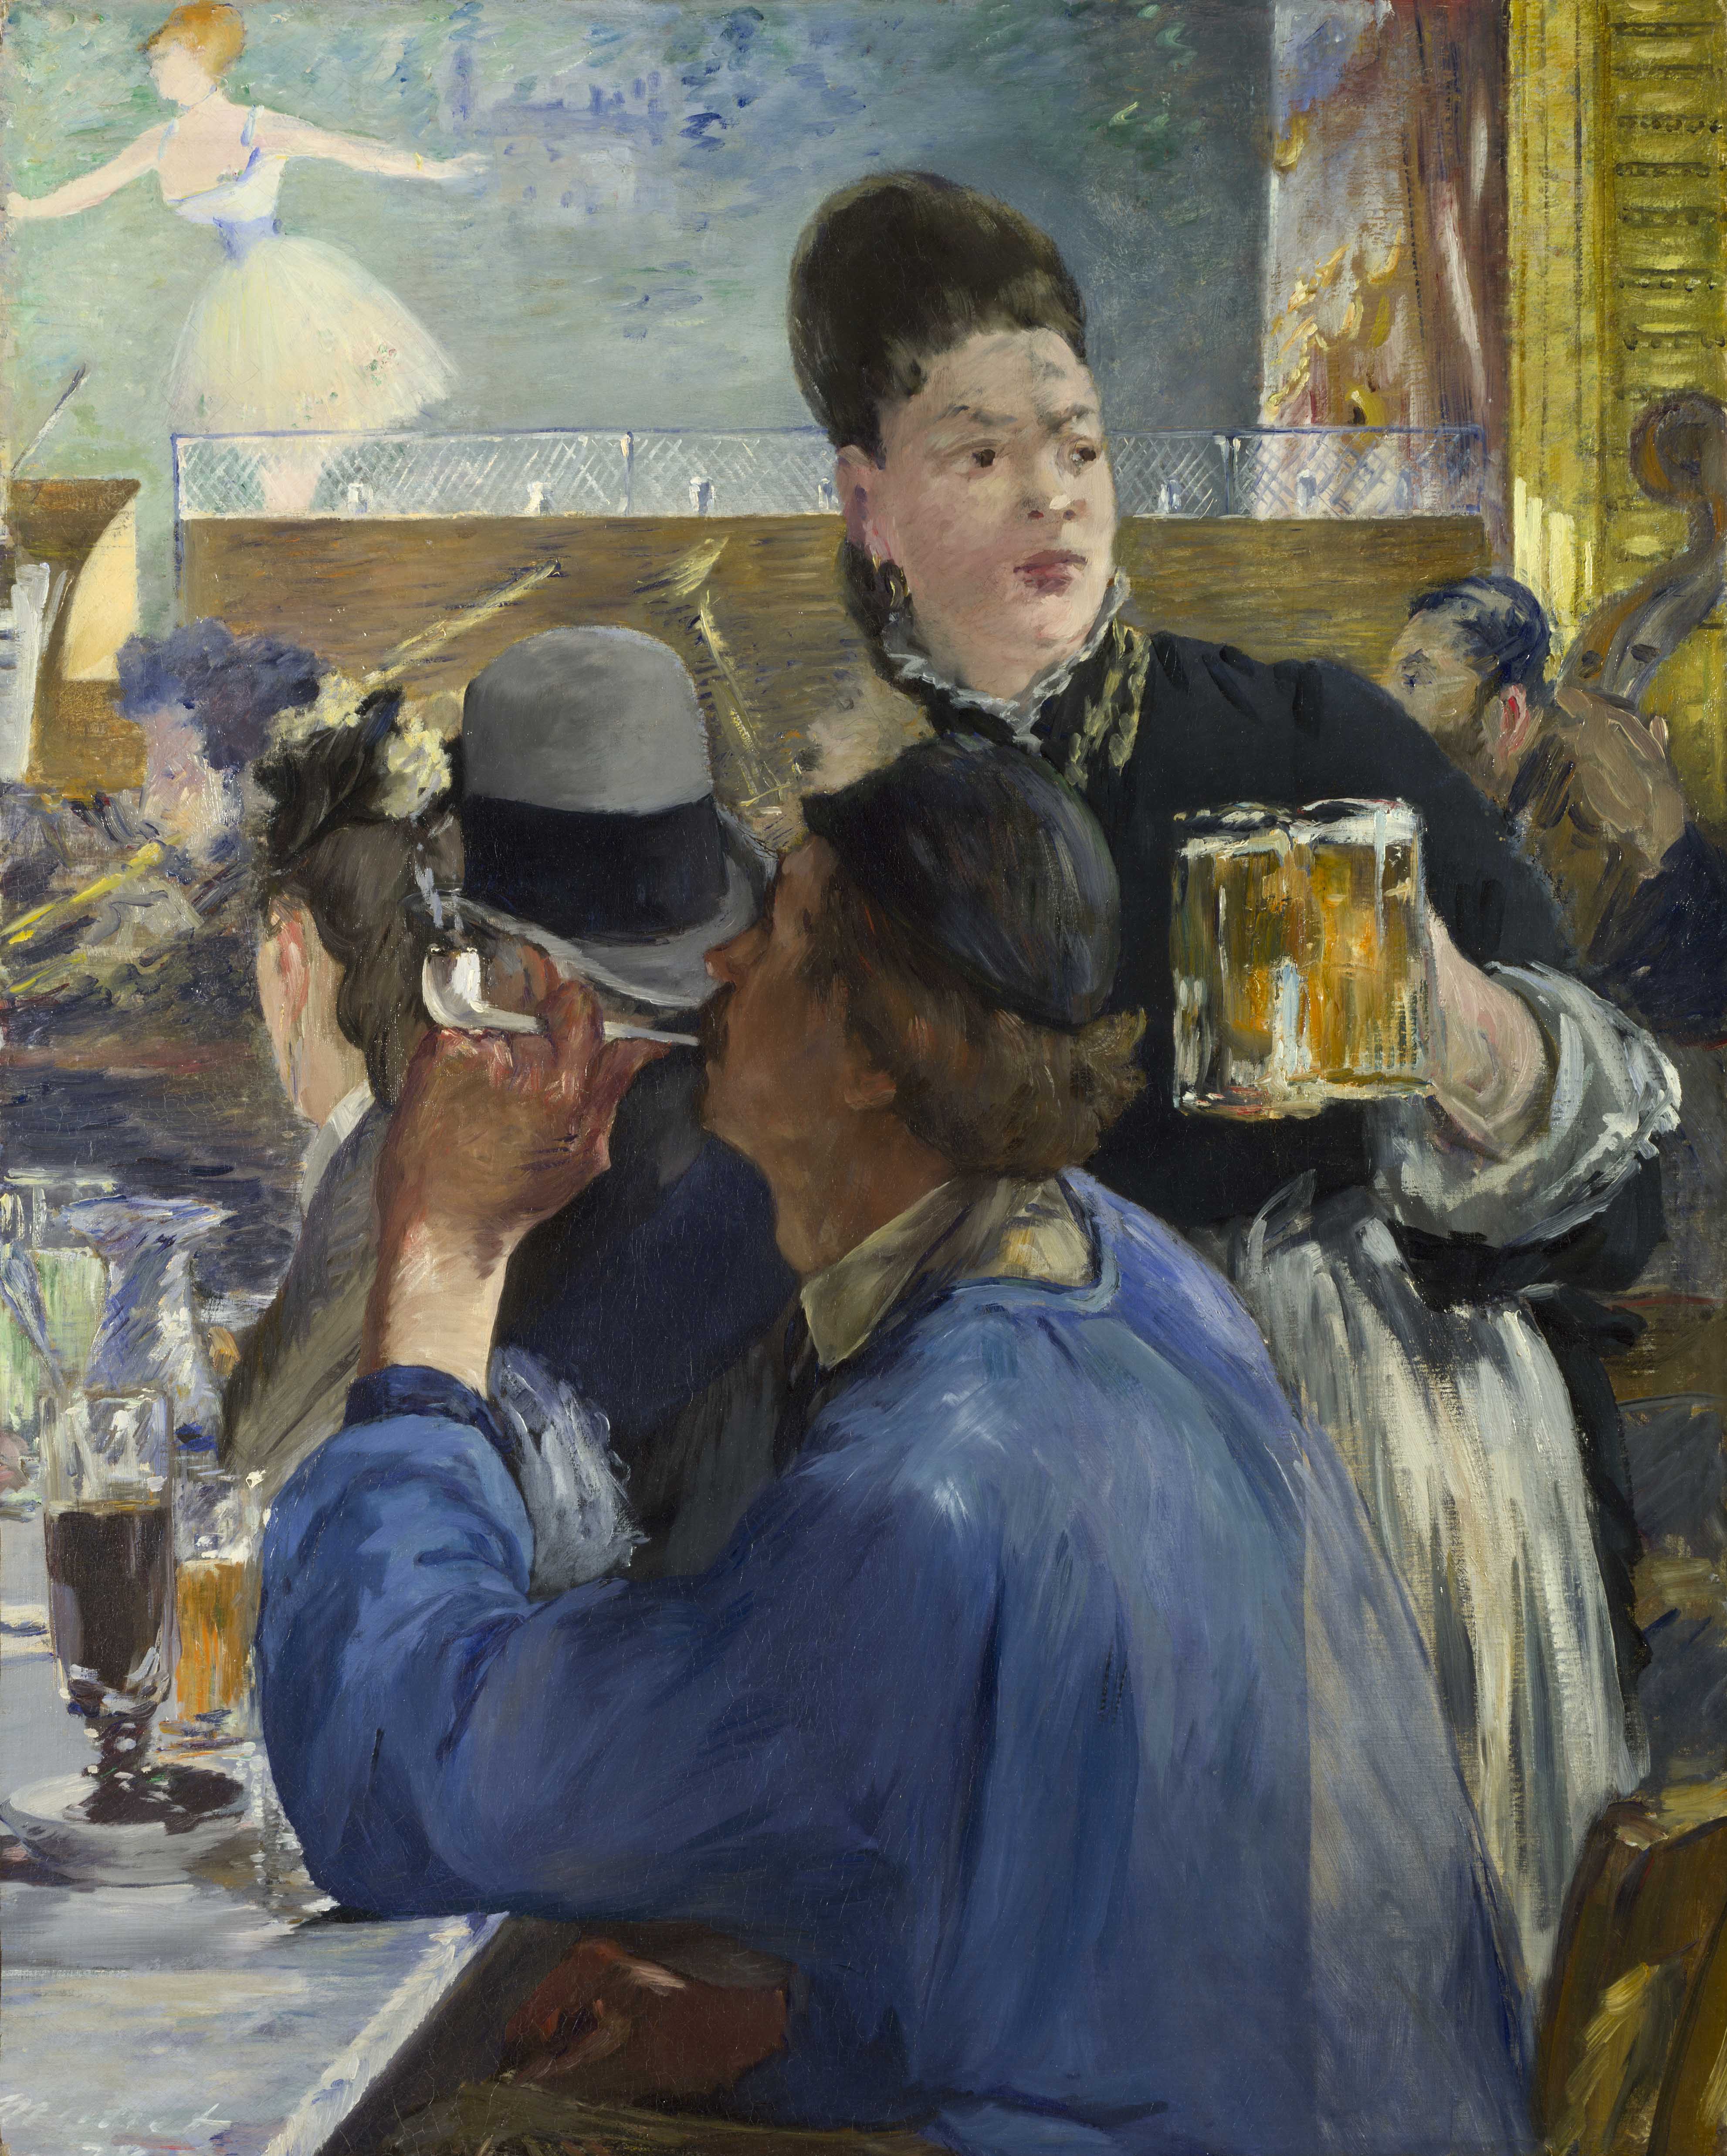 愛 德 華 ． 馬 內 （ 1 8 3 2 - 1 8 8 3 ） 作 品 〈 音 樂 咖 啡 廳 一 角 〉 ， 約 1 8 7 8 - 1 8 8 0 年 創 作 。 圖 片 版 權 ： 英 國 國 家 藝 廊 